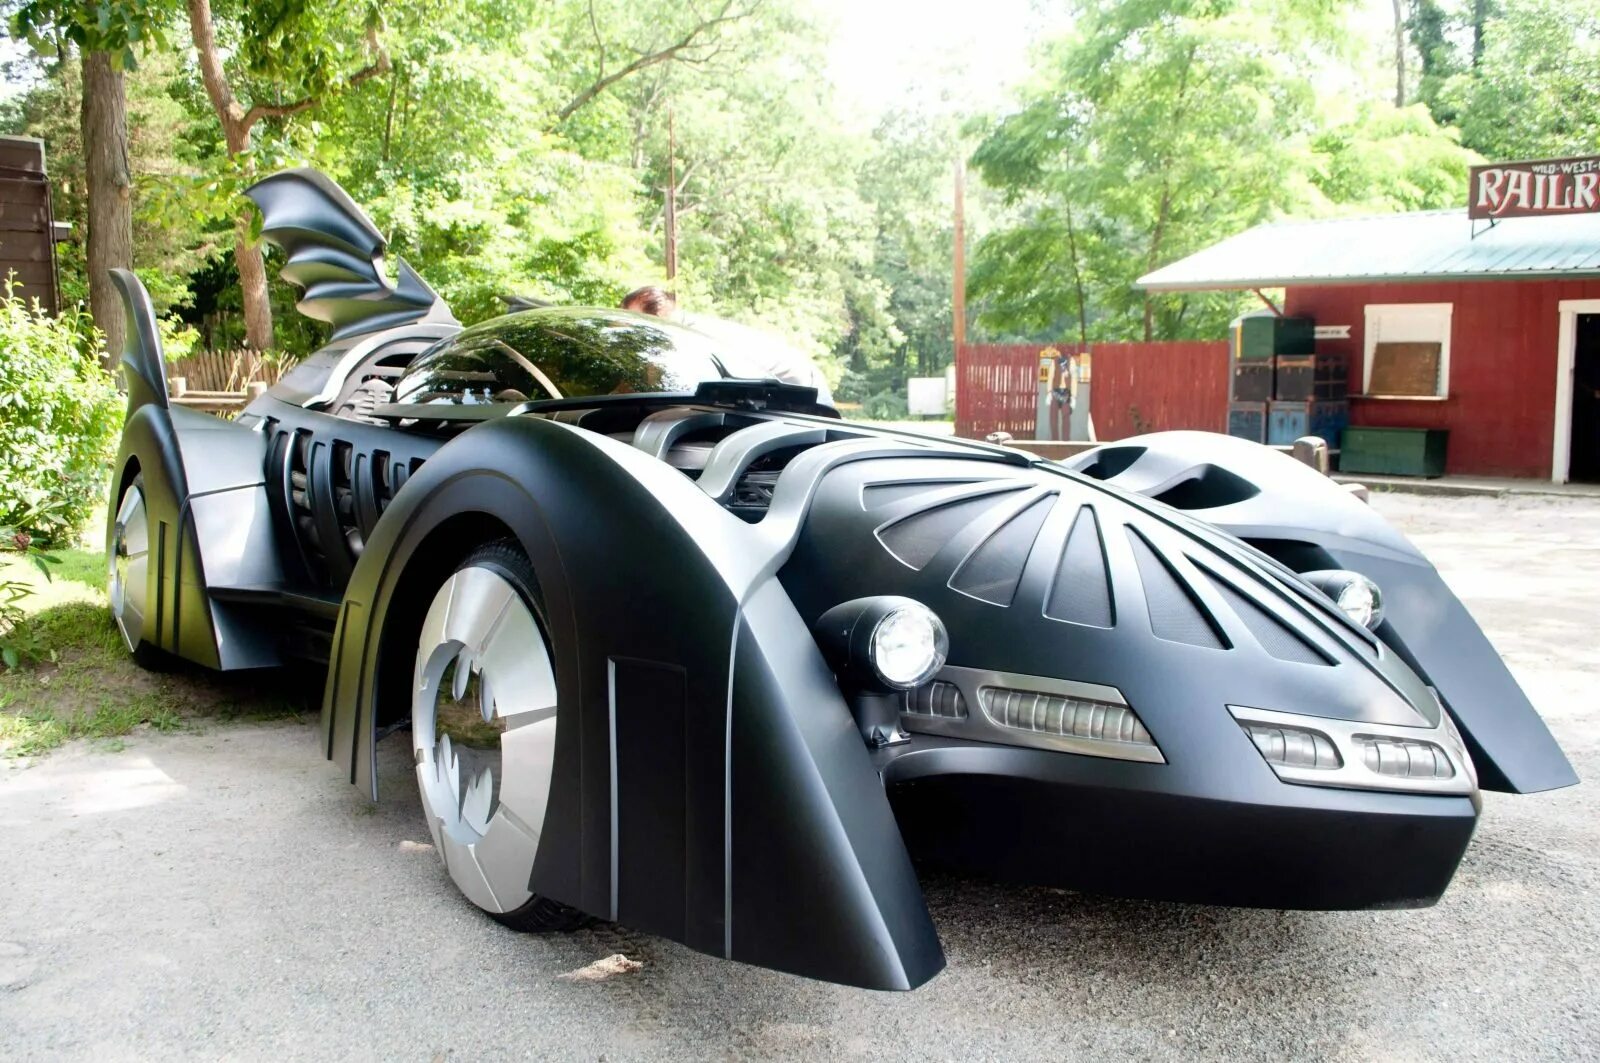 Самые странные автомобили в мире. Бэтмобиль Бугатти. Бэтмобиль Дженерал Моторс. Бэтмобиль Шевроле. Бэтмобиль 1930.